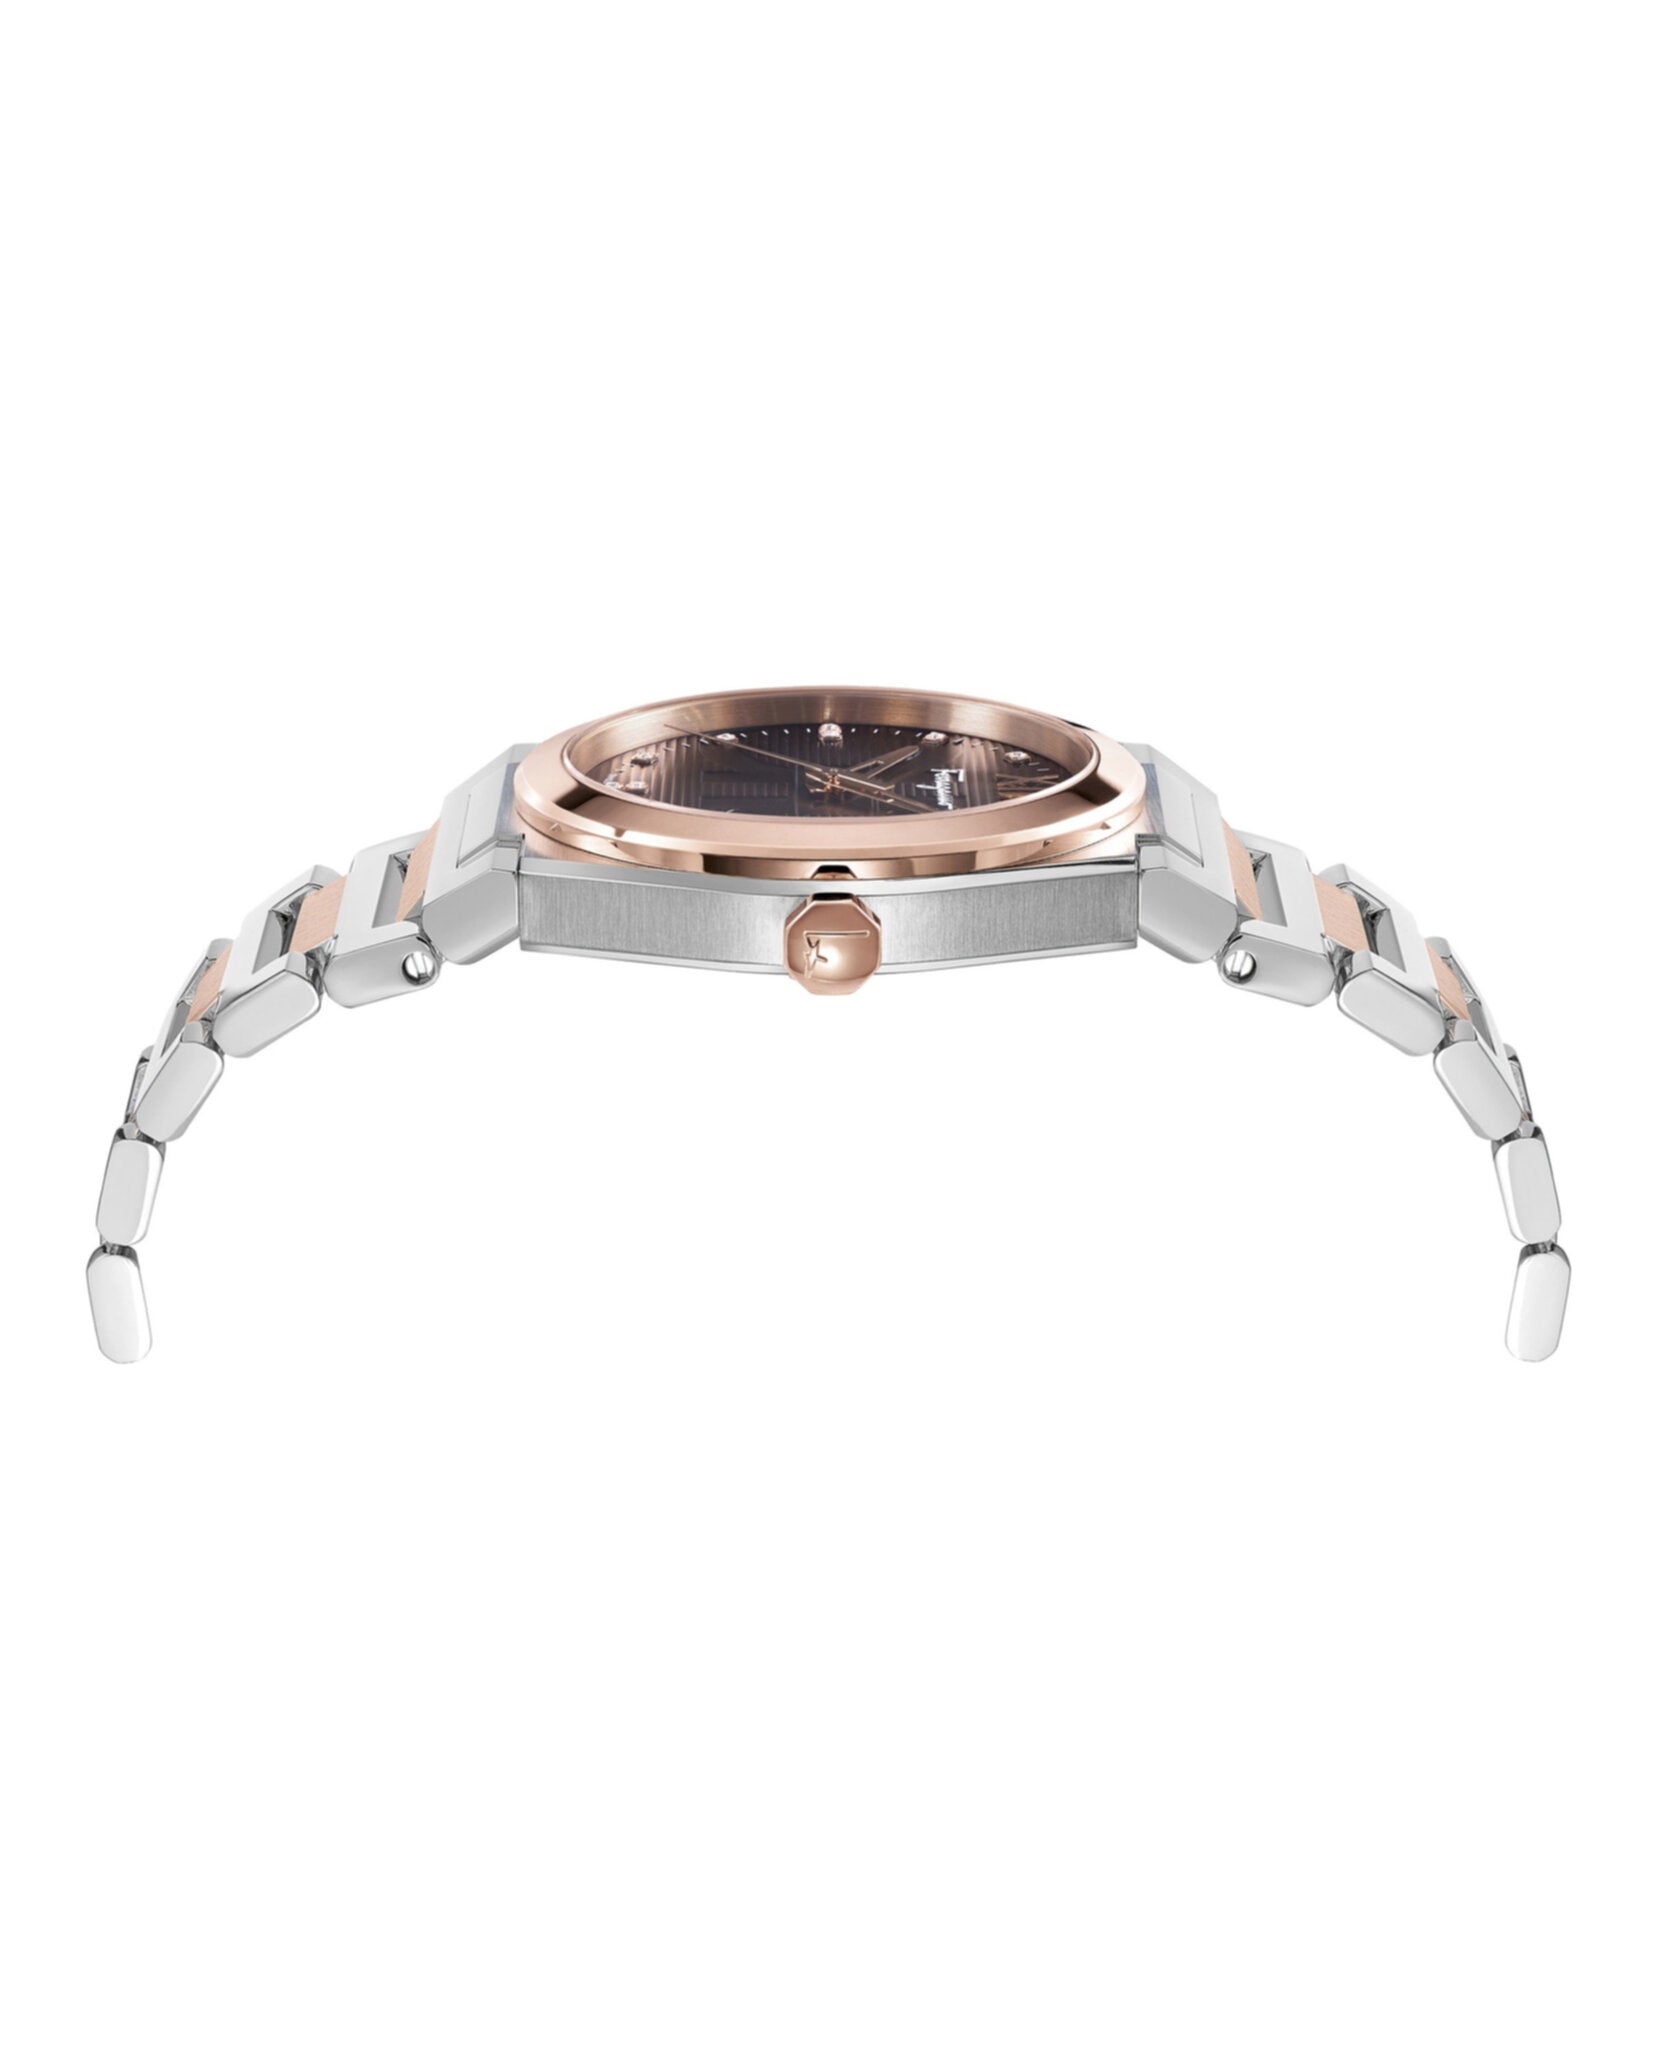 Vega Pair Diamond Watch